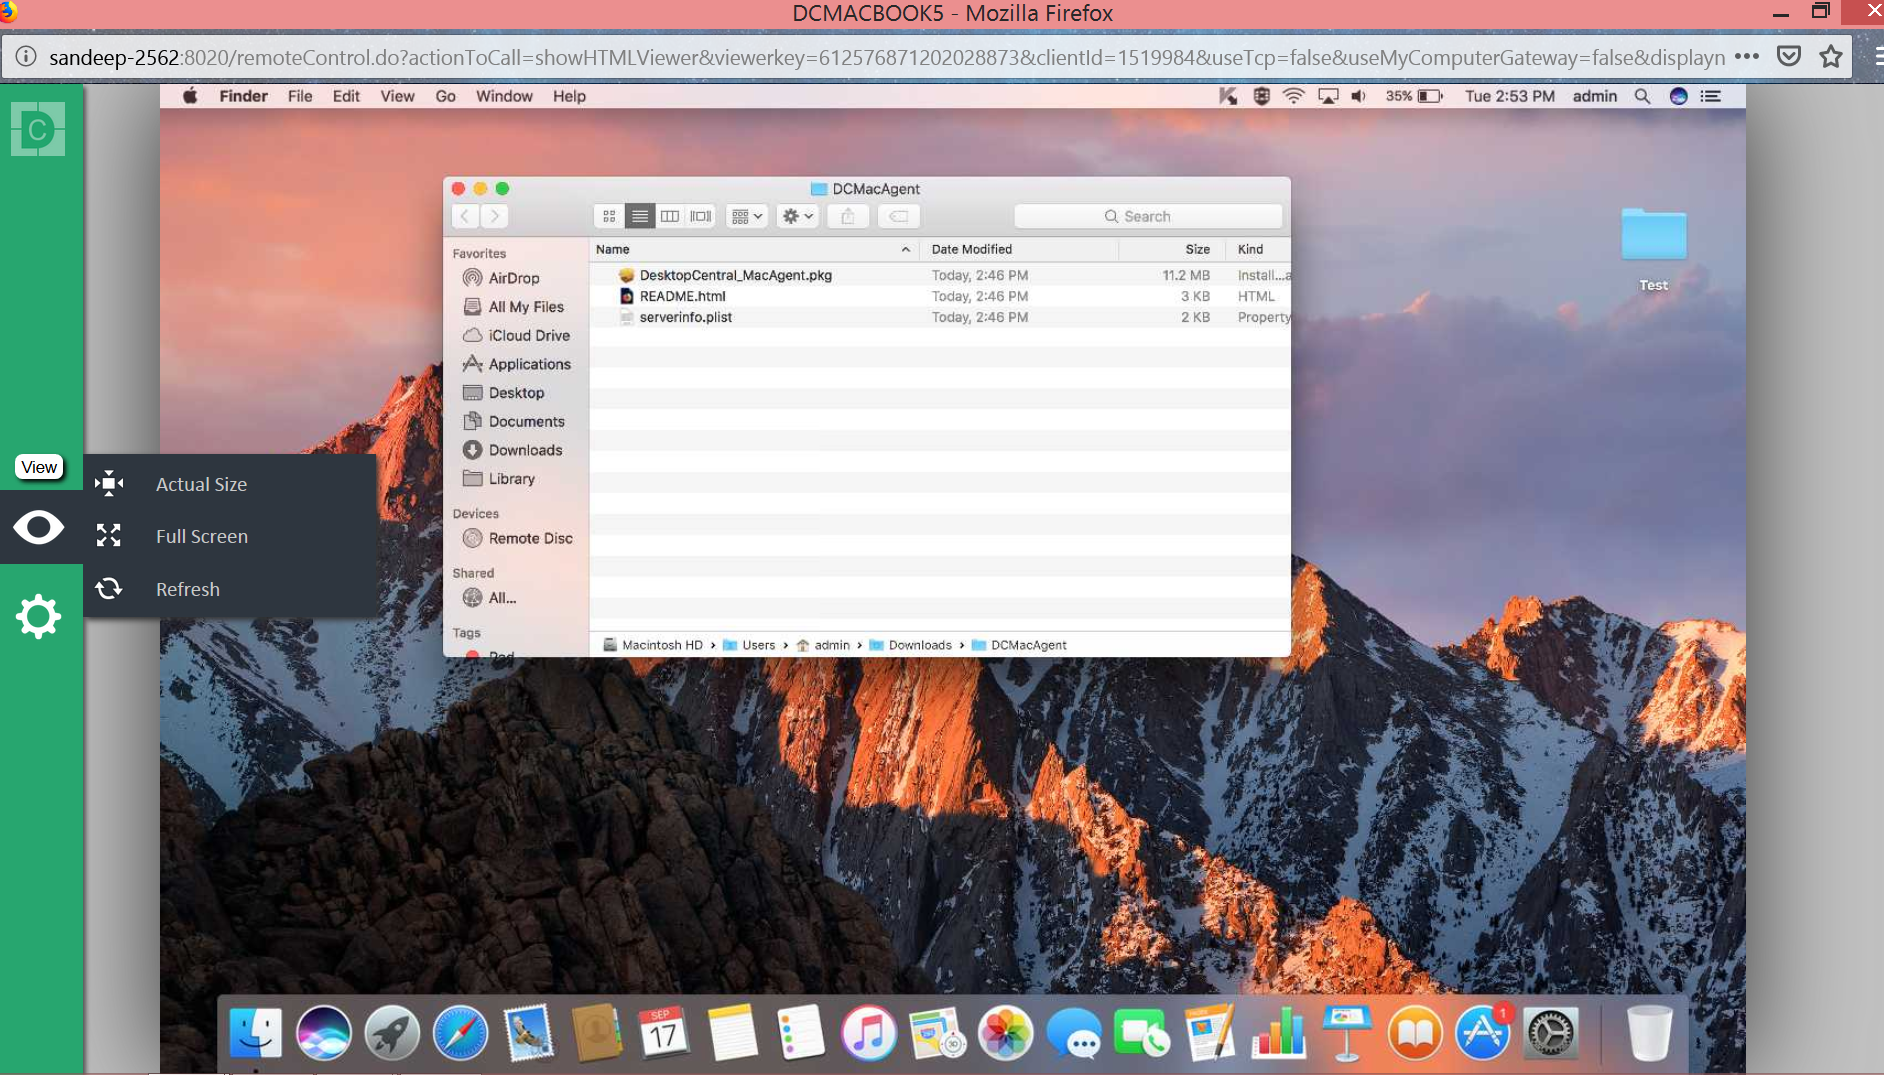 Initiate remote sessions to Mac desktops in just a few clicks